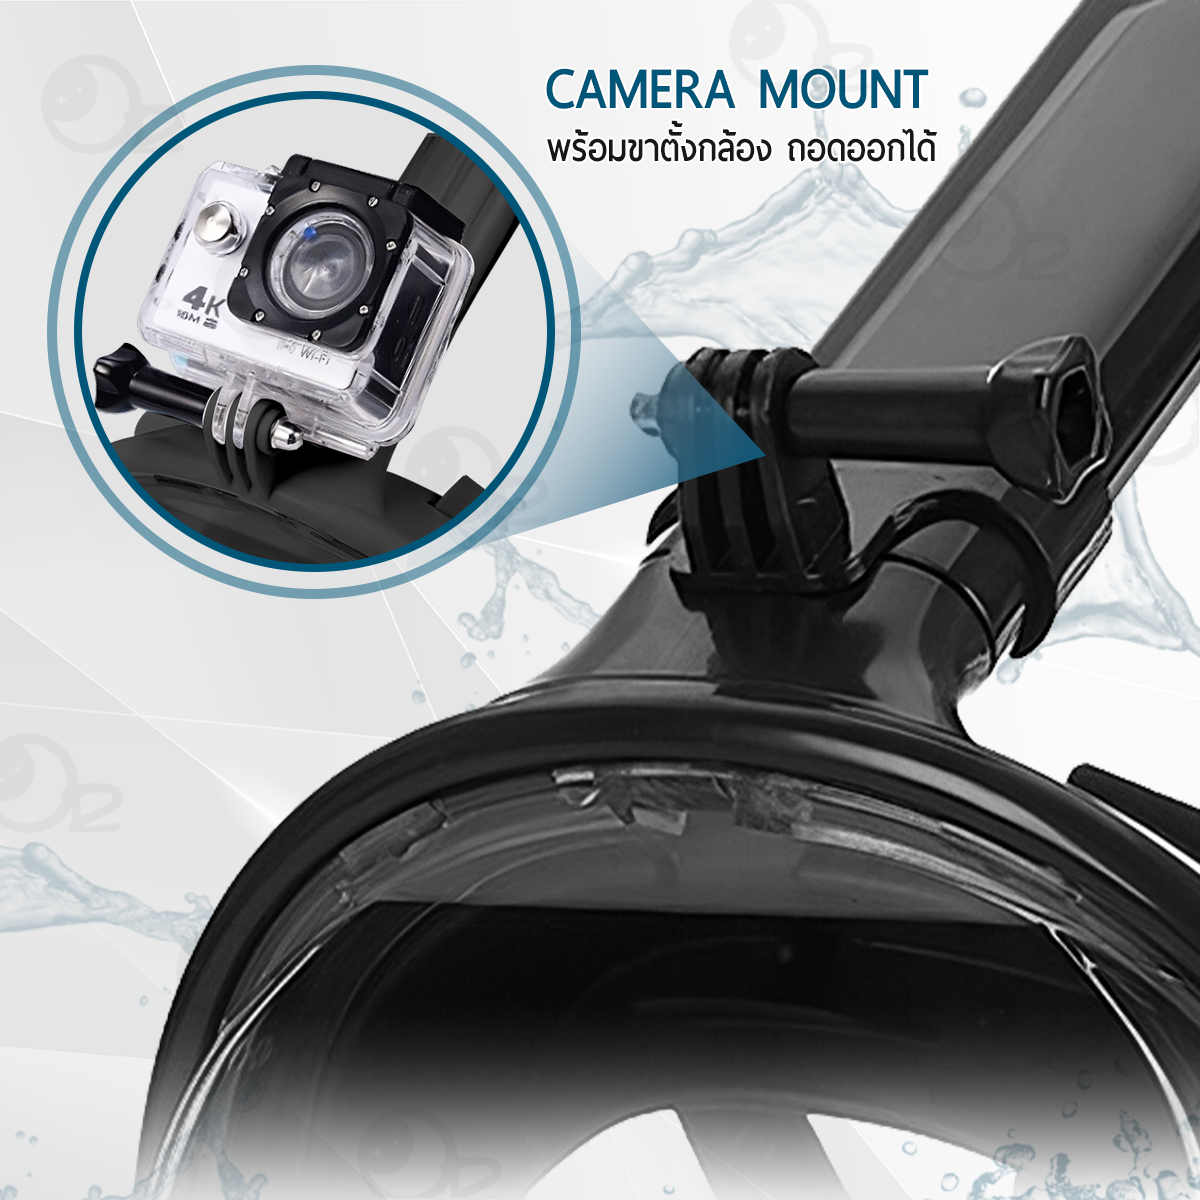 ภาพประกอบคำอธิบาย ORZ - หน้ากากดำน้ำ ขนาด S/M แบบเต็มหน้า ไม่ต้องคาบ ท่อหายใจ กันฝ้า พร้อมขาติดกล้อง - Diving mask 180° View Snorkel Mask Panoramic Full Face Design Size S/M